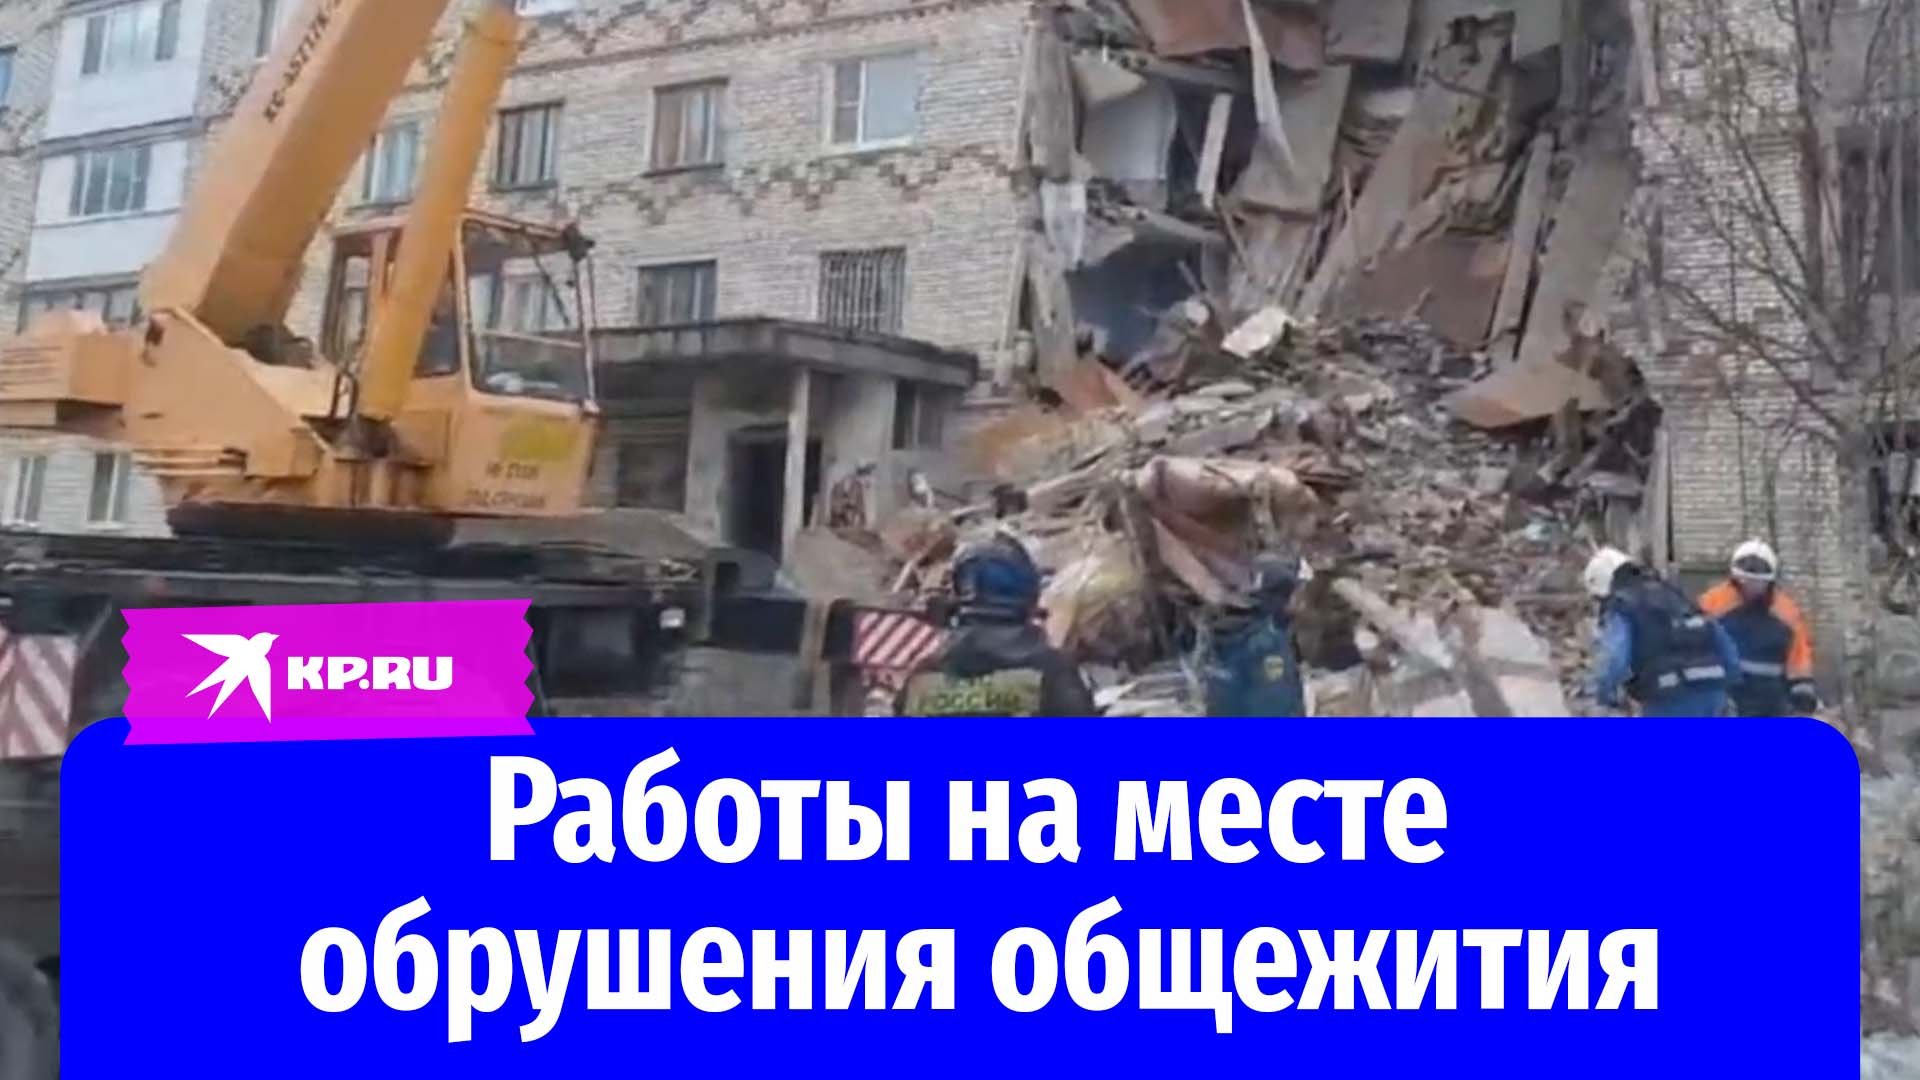 Сотрудники МЧС РФ разбирают завалы на месте обрушения общежития